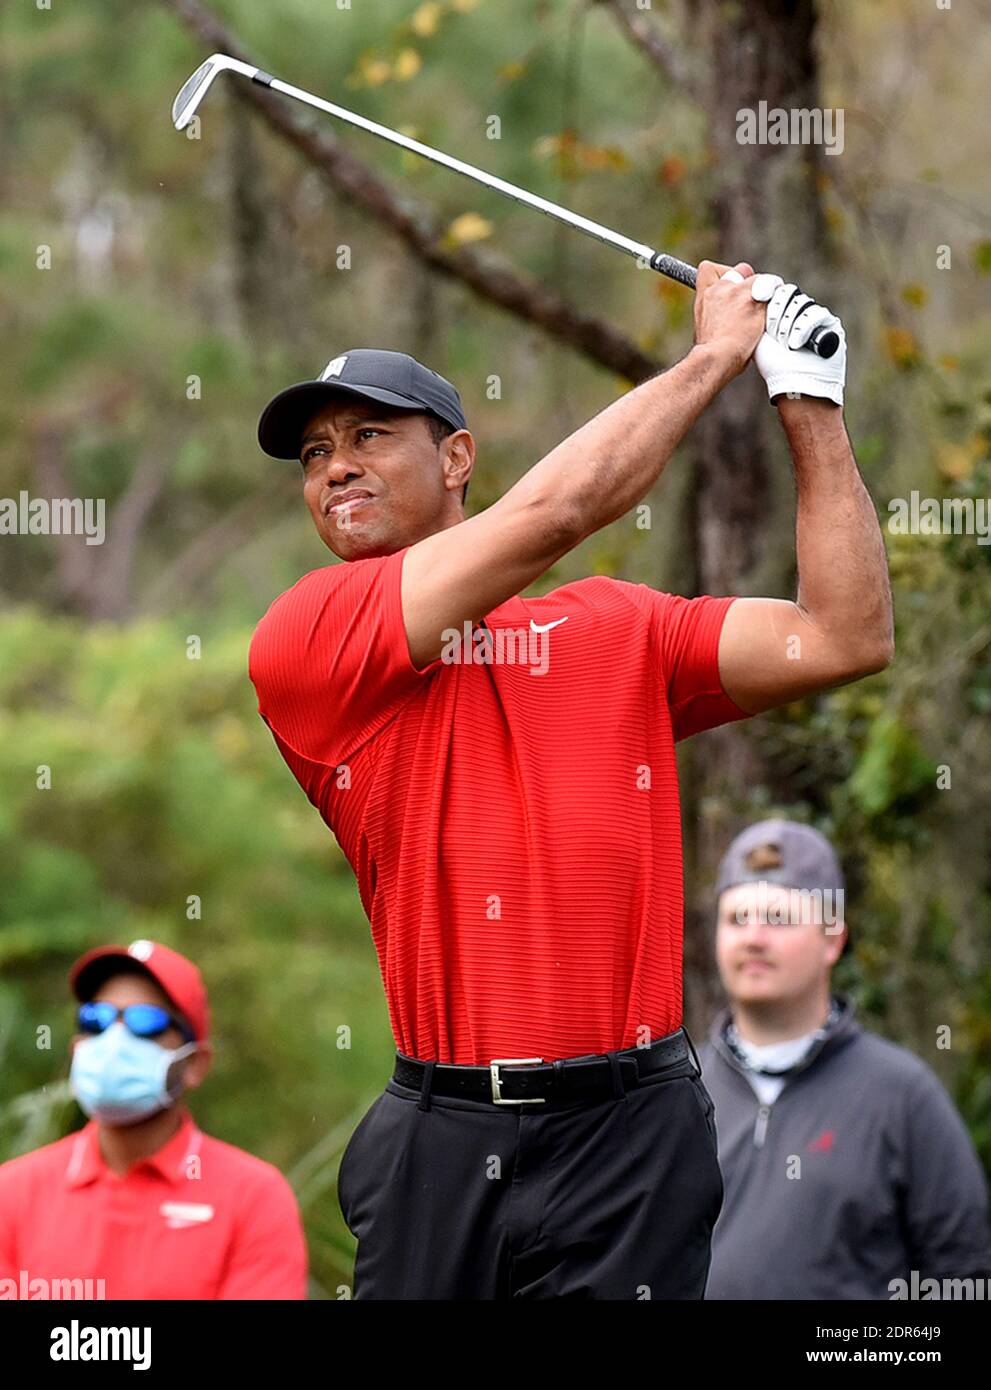 Tiger Woods réussit un tir en T sur le quatrième trou lors de la dernière partie du tournoi de golf PNC Championship au Ritz-Carlton Golf Club. Tiger est associé à son fils Charlie. Banque D'Images